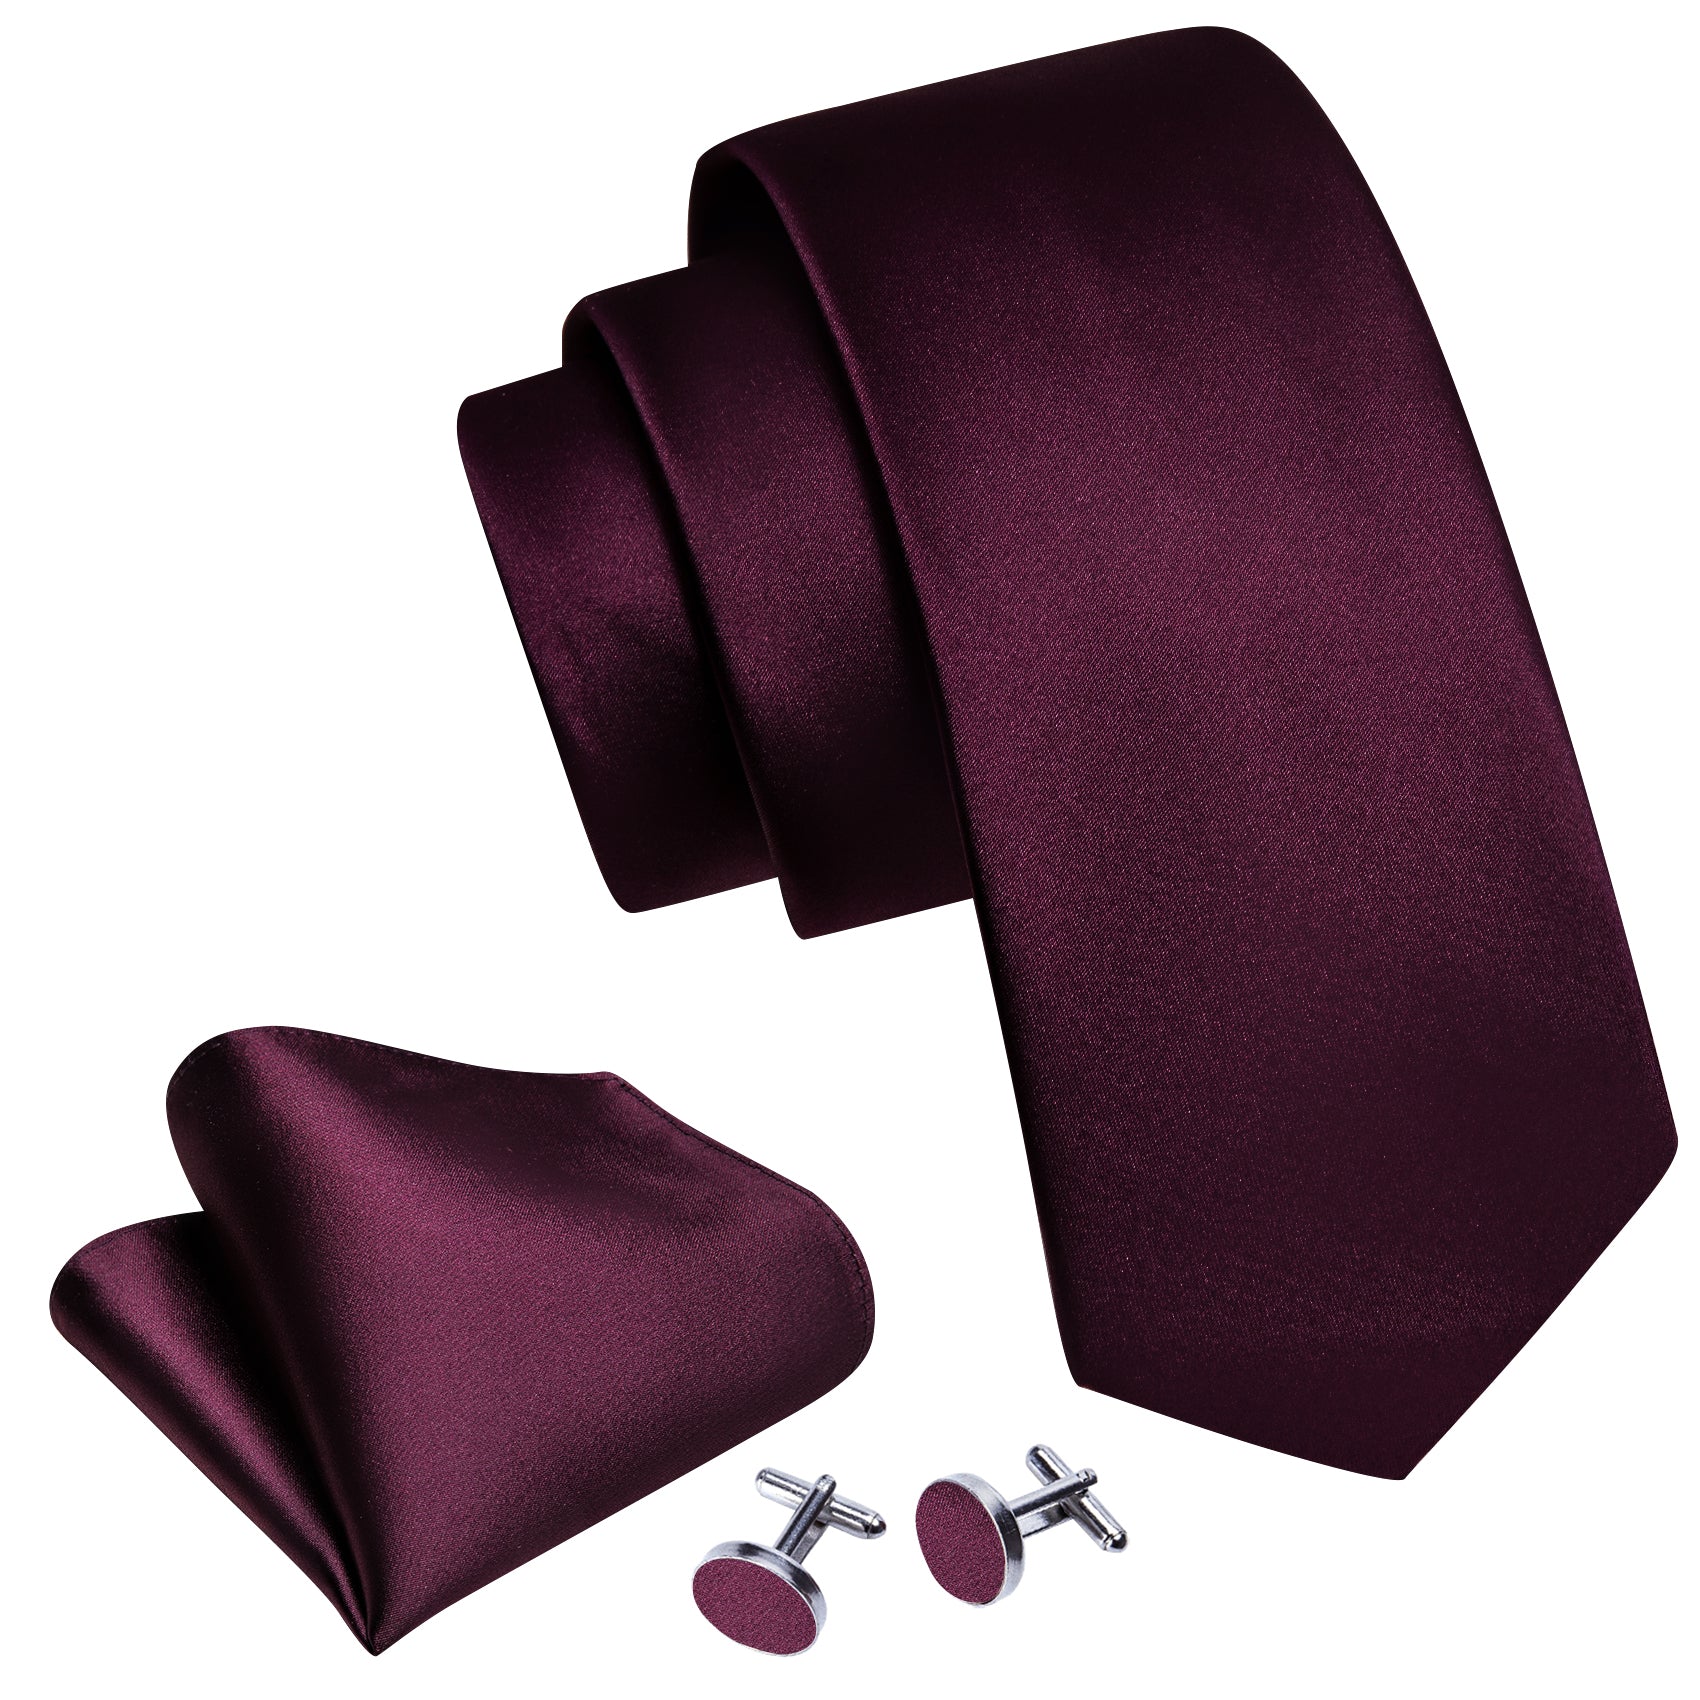 Barry.wang Solid Tie Wine Red Silk Tie Handkerchief Cufflinks Set for Men